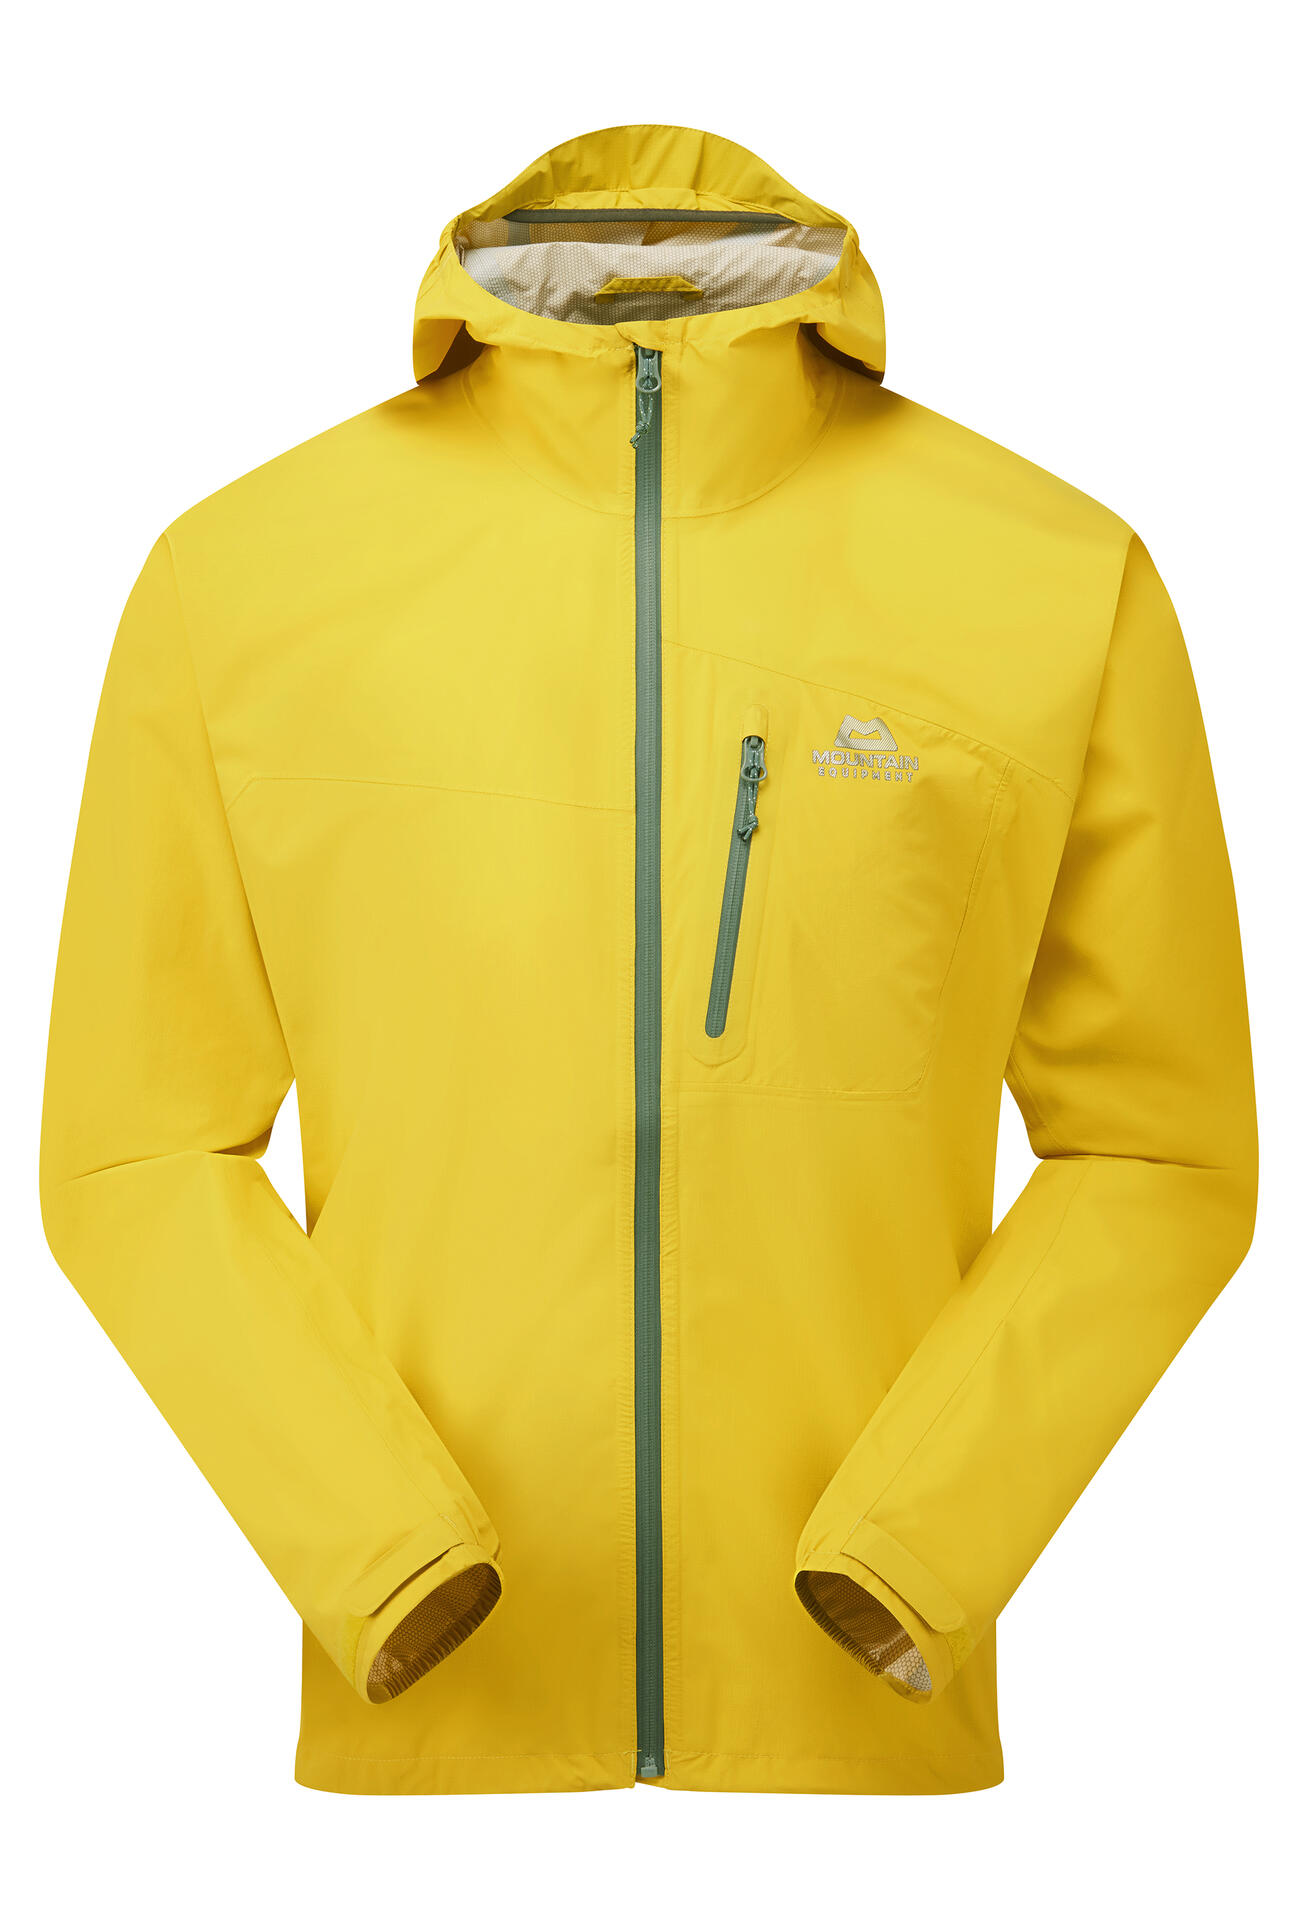 Mountain Equipment Katam Jacket Men'S Barva: lemon, Velikost: M